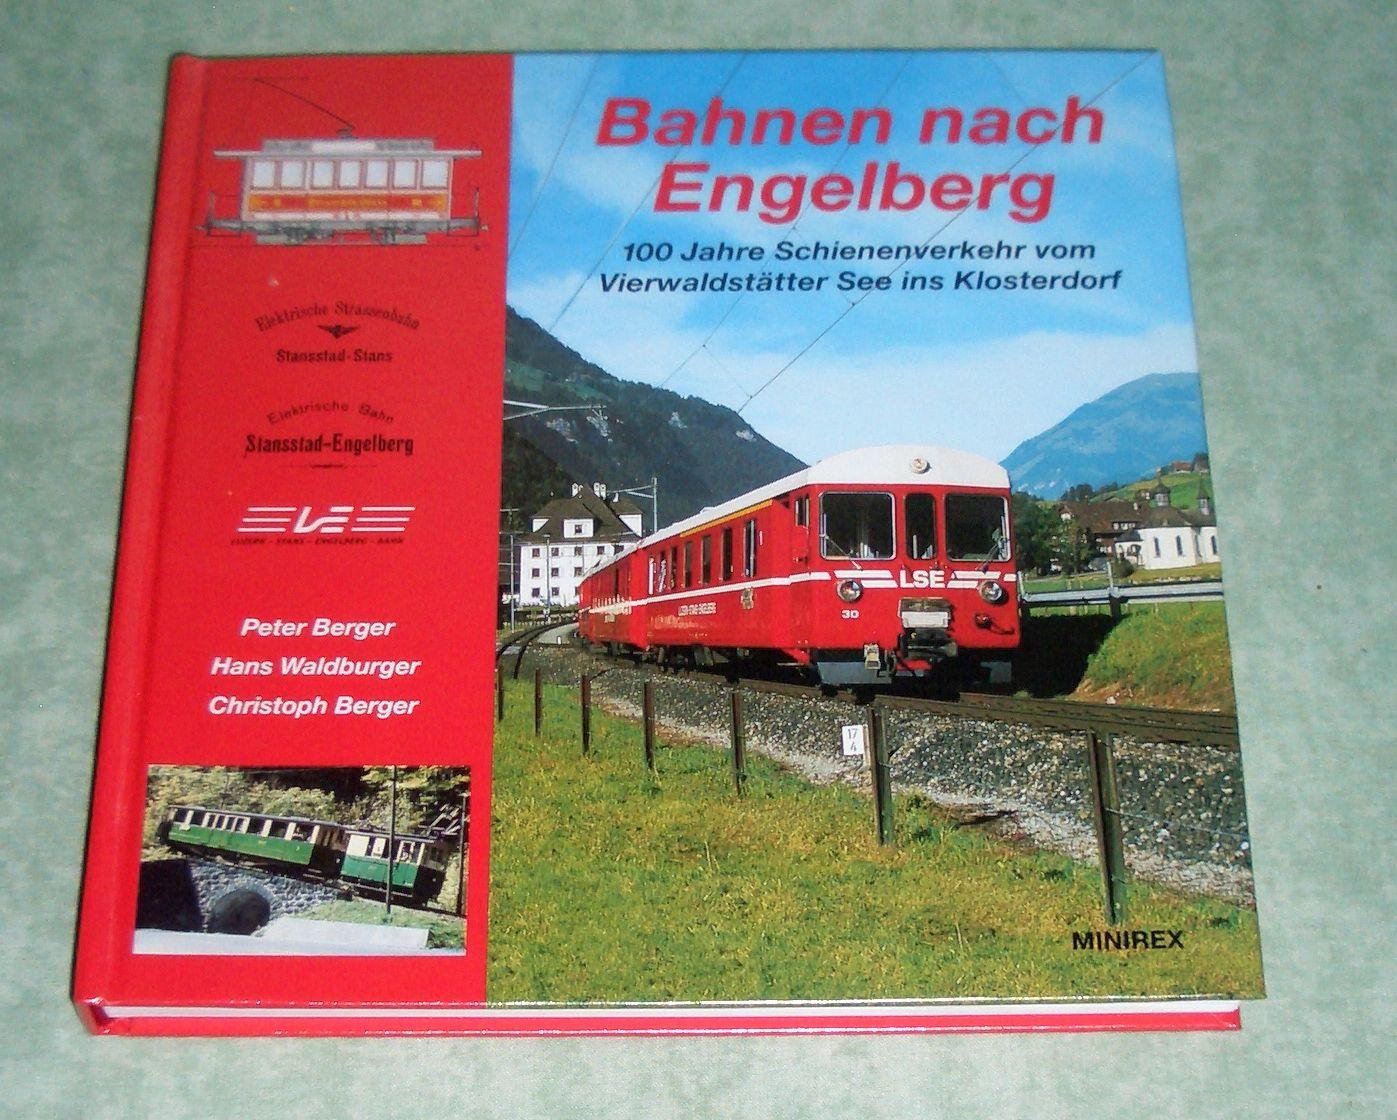 Bahnen nach Engelberg. 100 Jahre Schienenverkehr vom Vierwaldstätter See ins Klosterdorf. - Eisenbahn Berger, Peter / Waldburger, Hans / Berger, Christoph.